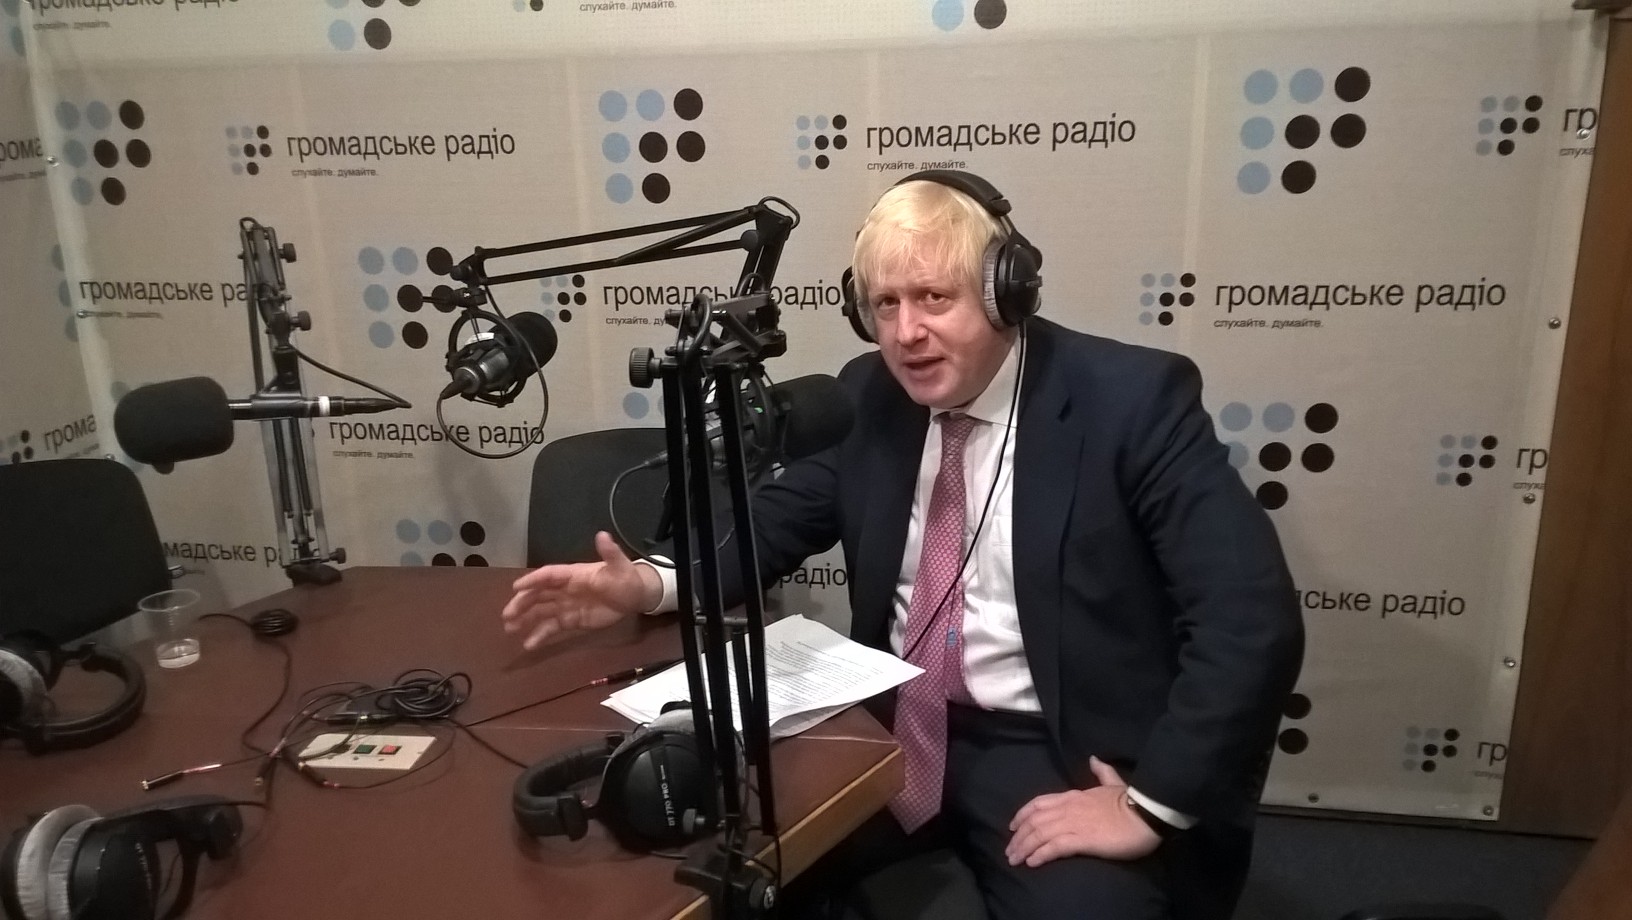 Велика Британія за те, щоби зберігати тиск і санкції проти Росії — Борис Джонсон